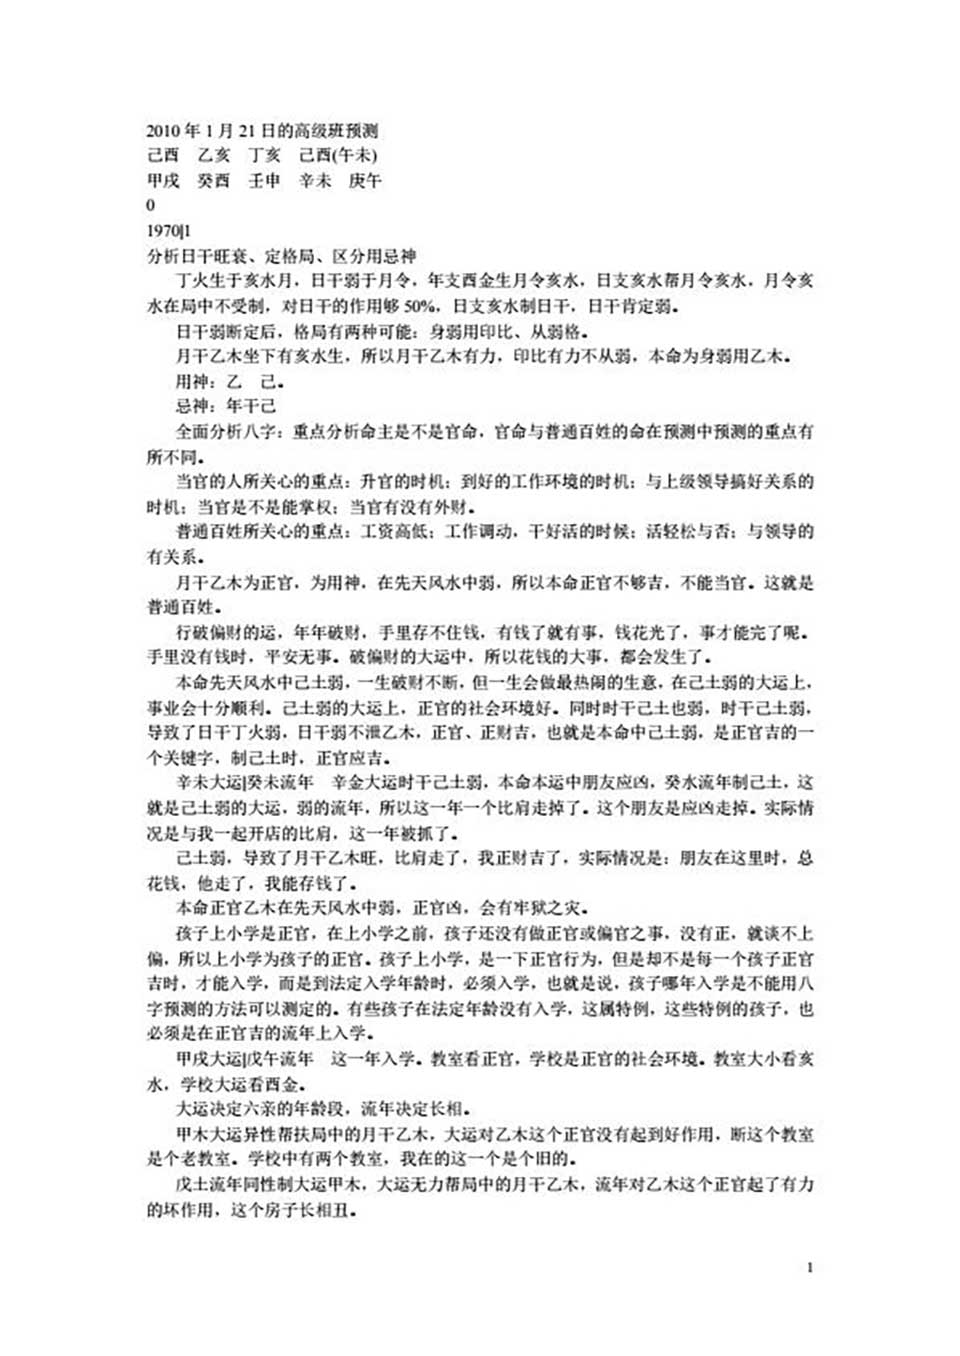 李涵辰-2010年1月21日的高级班预测30页.pdf